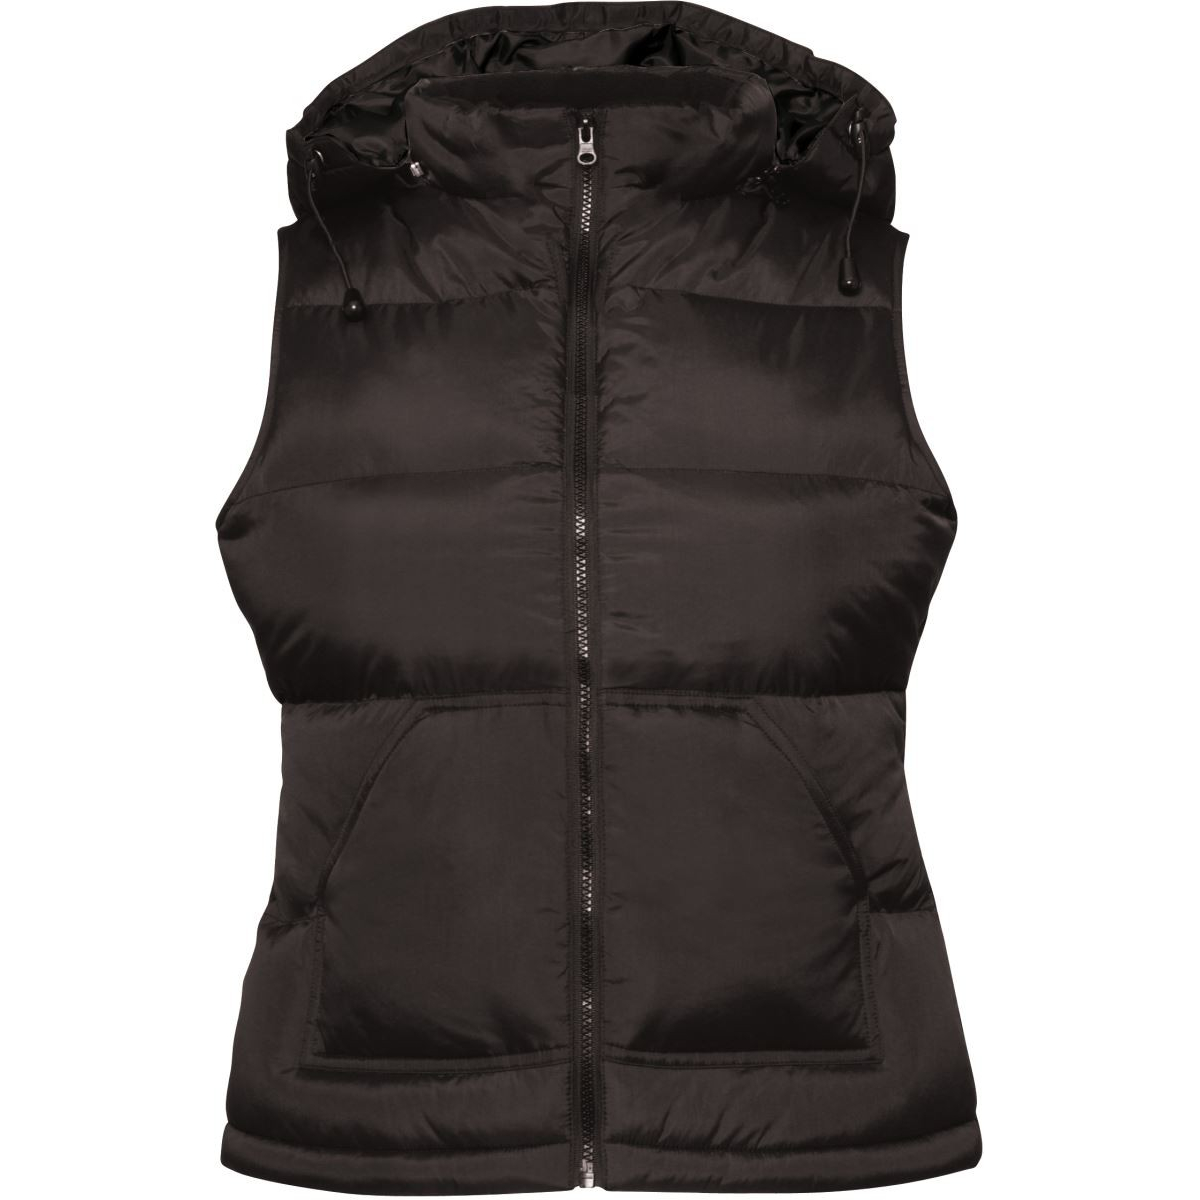 Dámská vesta s kapucí B&C Zen + - černá, XL